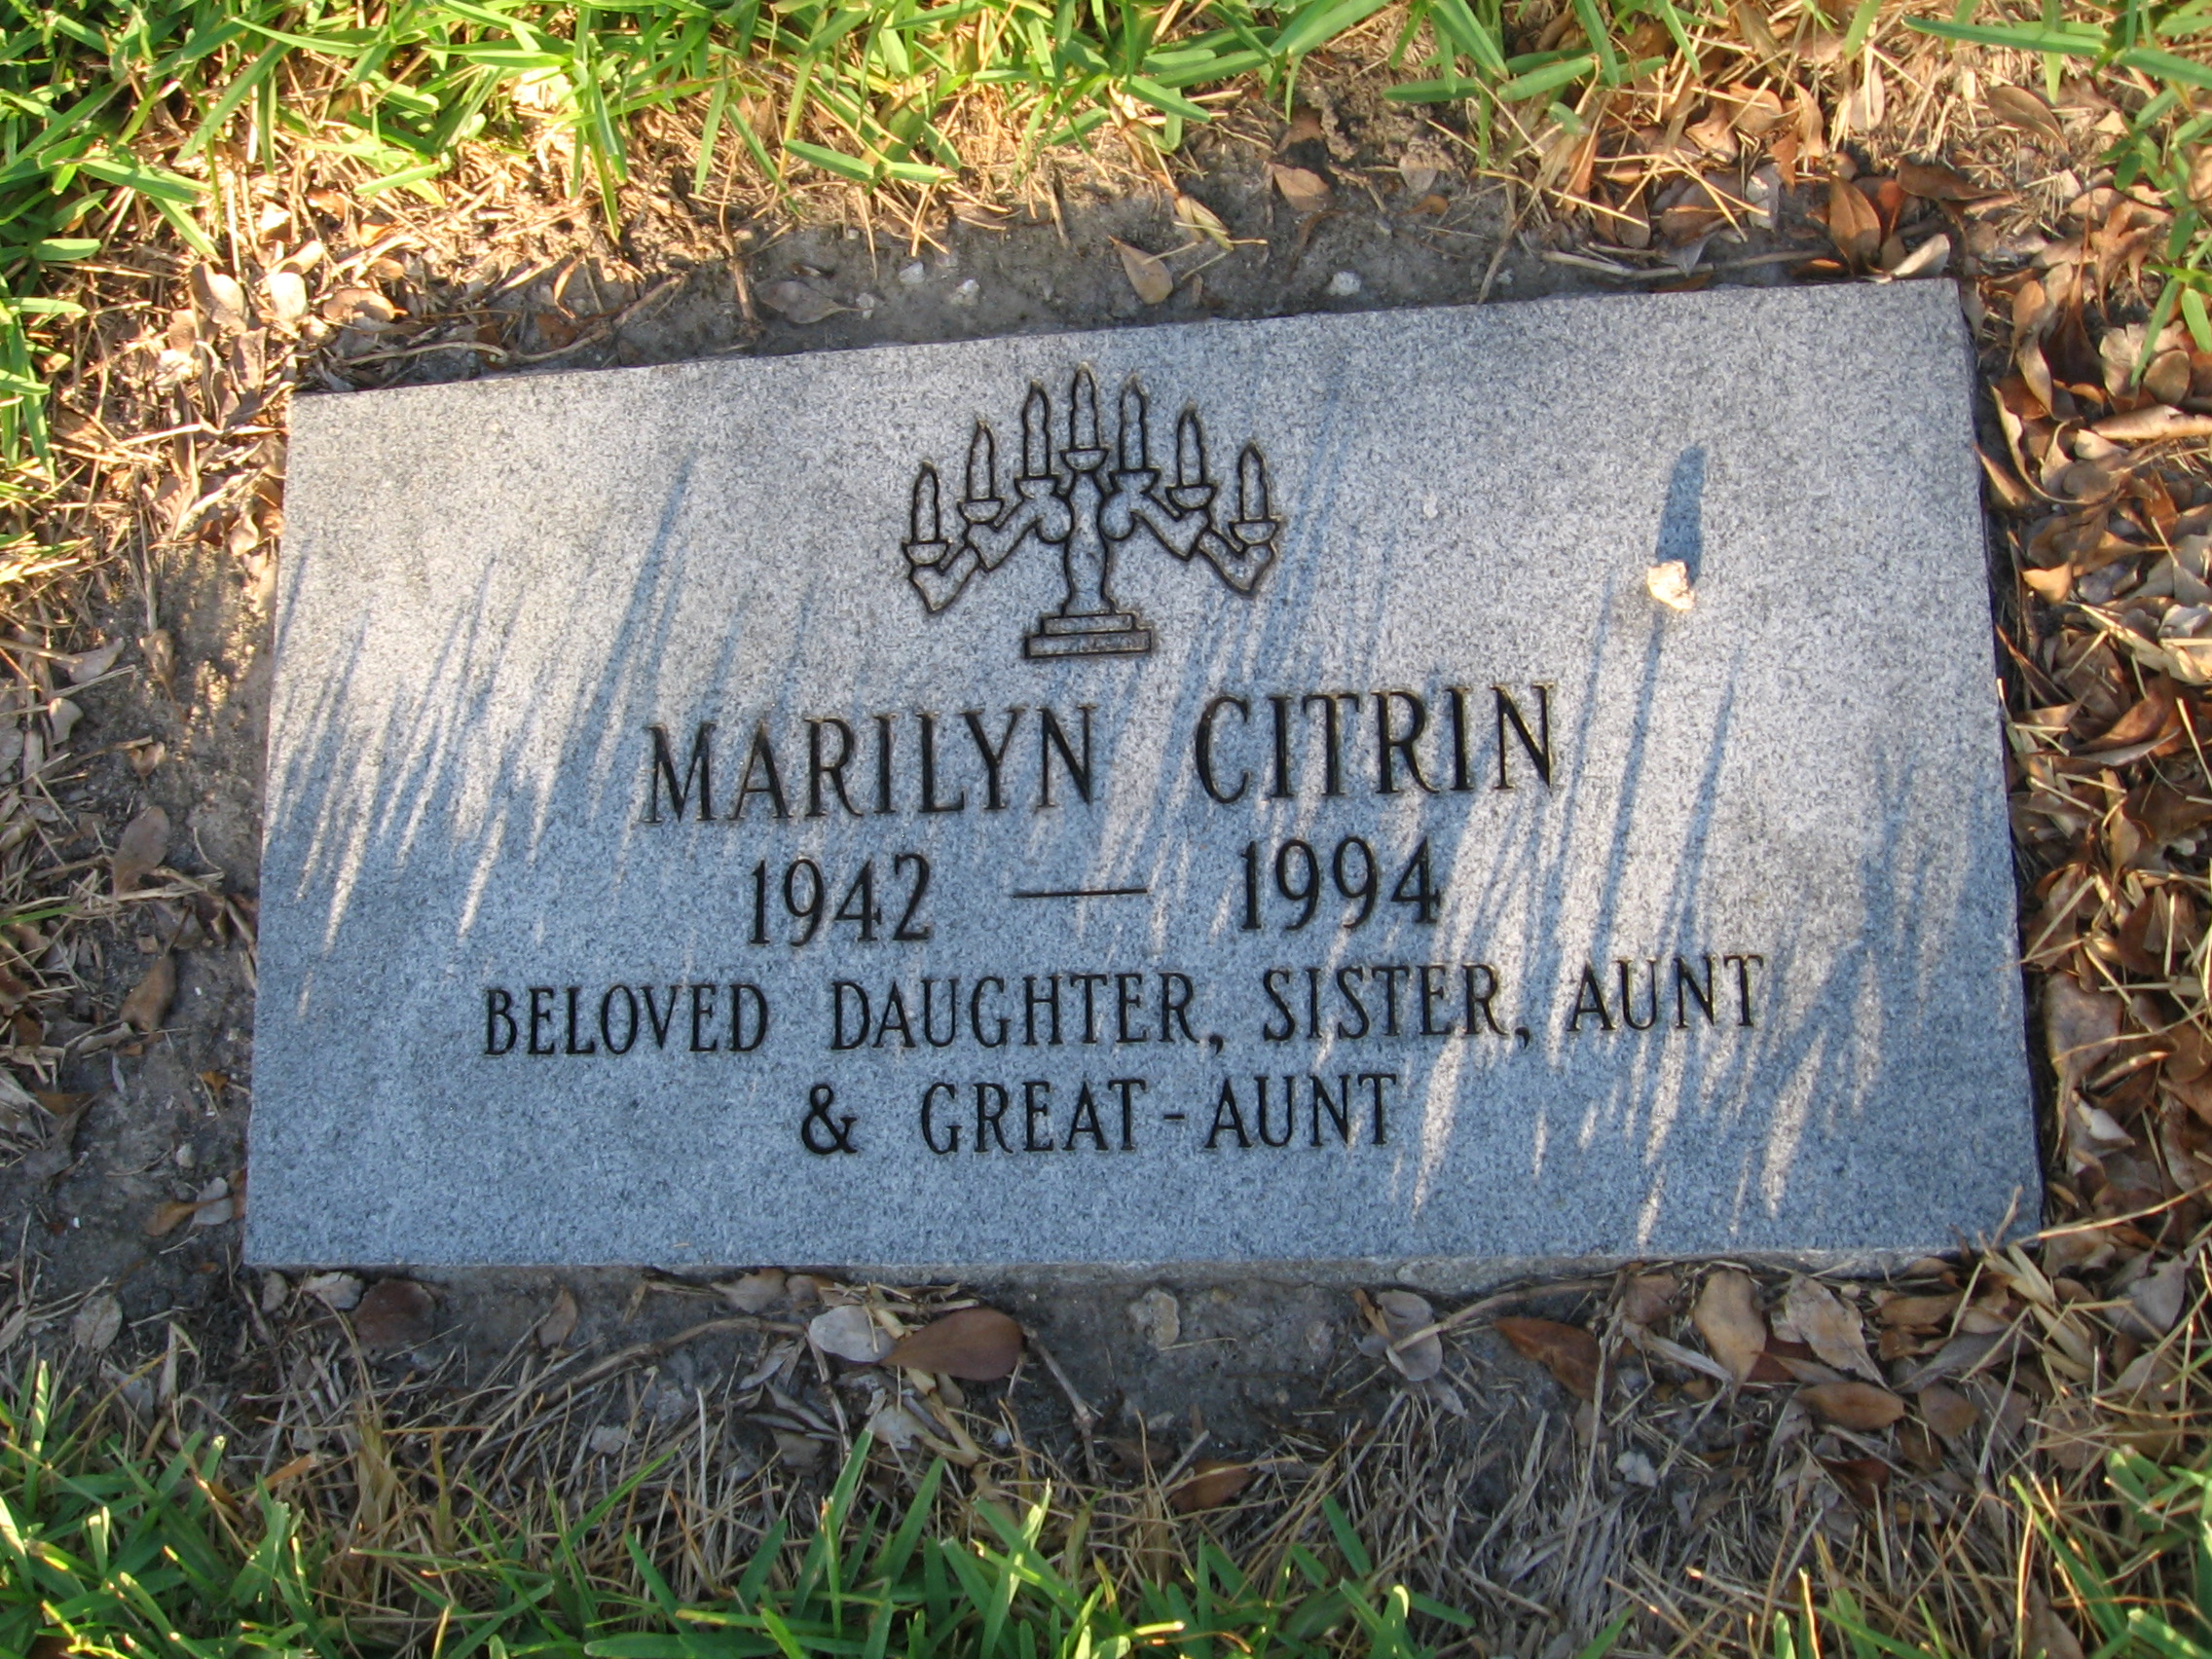 Marilyn Citrin